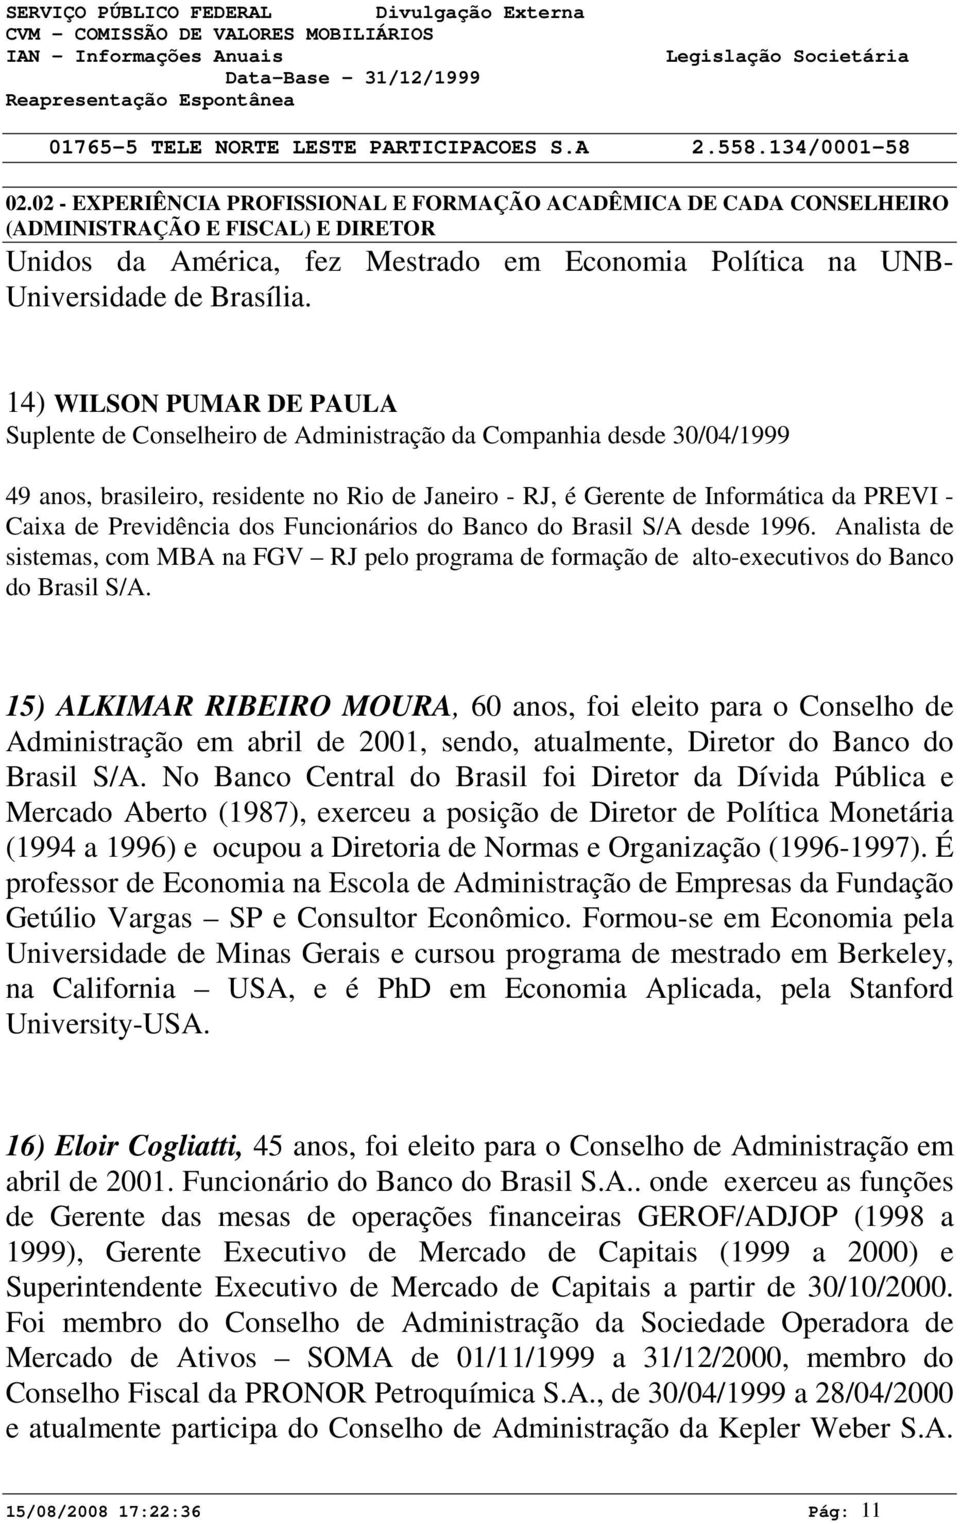 Previdência dos Funcionários do Banco do Brasil S/A desde 1996. Analista de sistemas, com MBA na FGV RJ pelo programa de formação de alto-executivos do Banco do Brasil S/A.